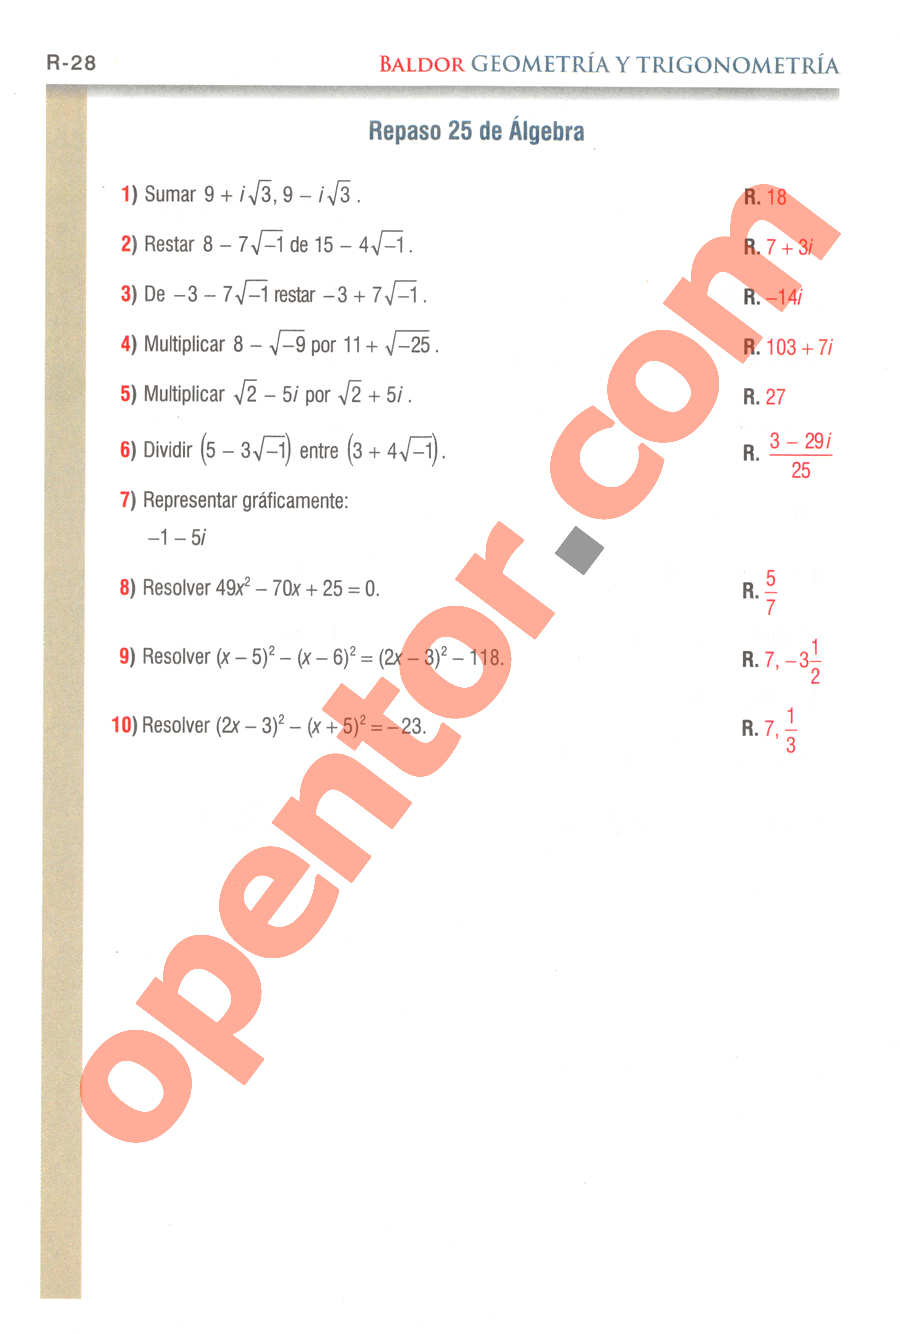 Geometría y Trigonometría de Baldor - Página R28